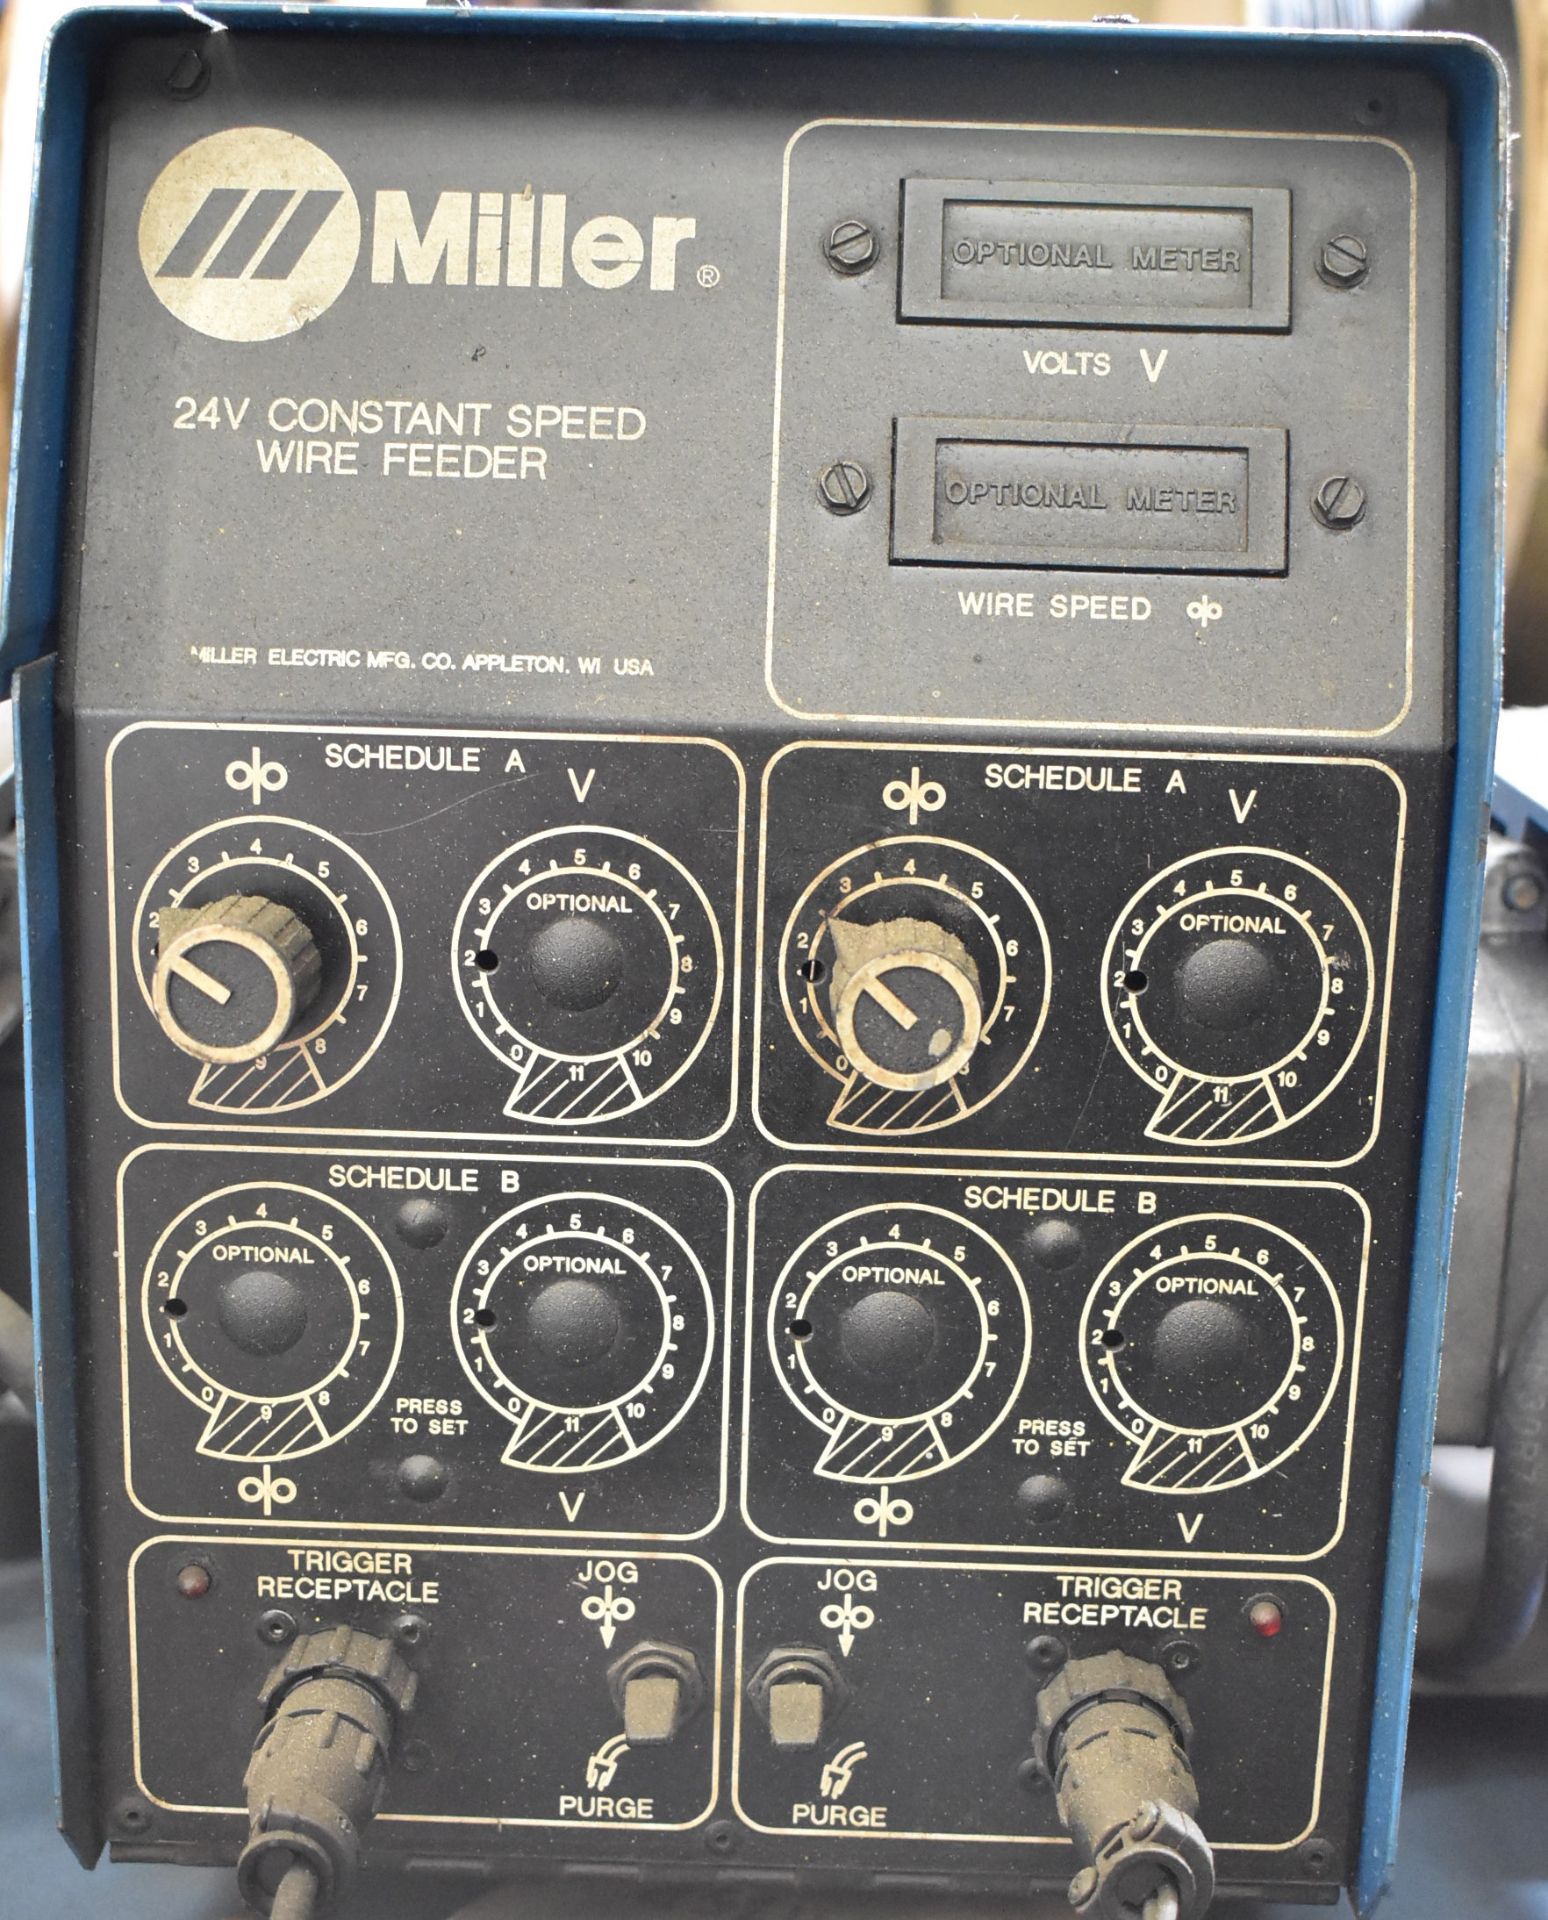 MILLER DELTAWELD 452 DIGITAL MIG WELDER WITH MILLER 24V DUAL REEL WIRE FEEDER, CABLES AND GUN, ( - Image 3 of 6